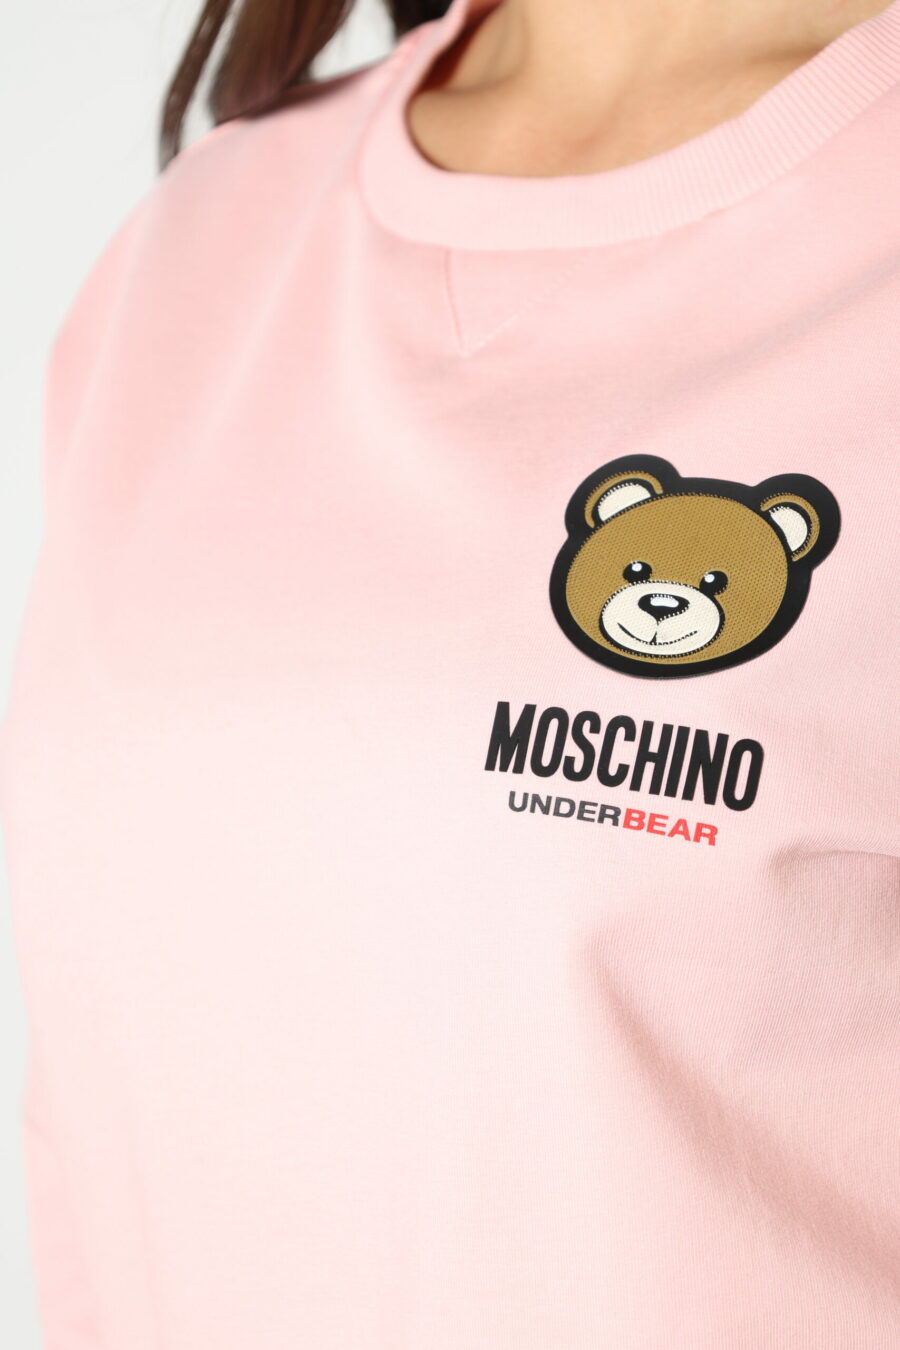 Rosa Sweatshirt mit Bärenlogoaufnäher "underbear" - 8052865435499 342 skaliert